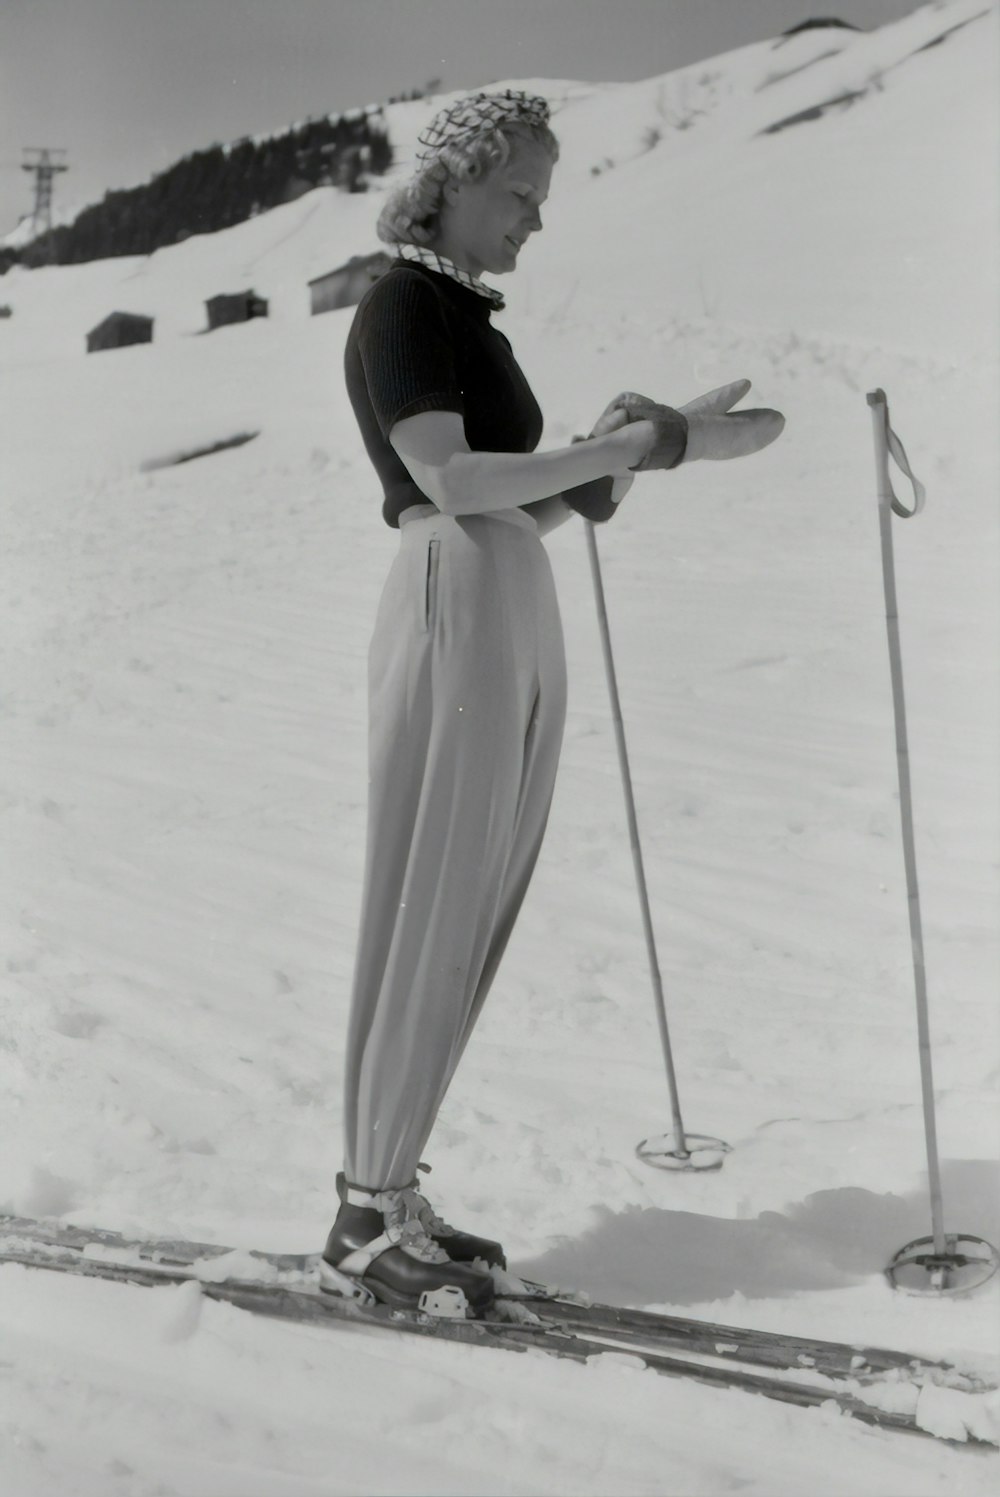 Photographie en niveaux de gris d’une femme utilisant un snowboard